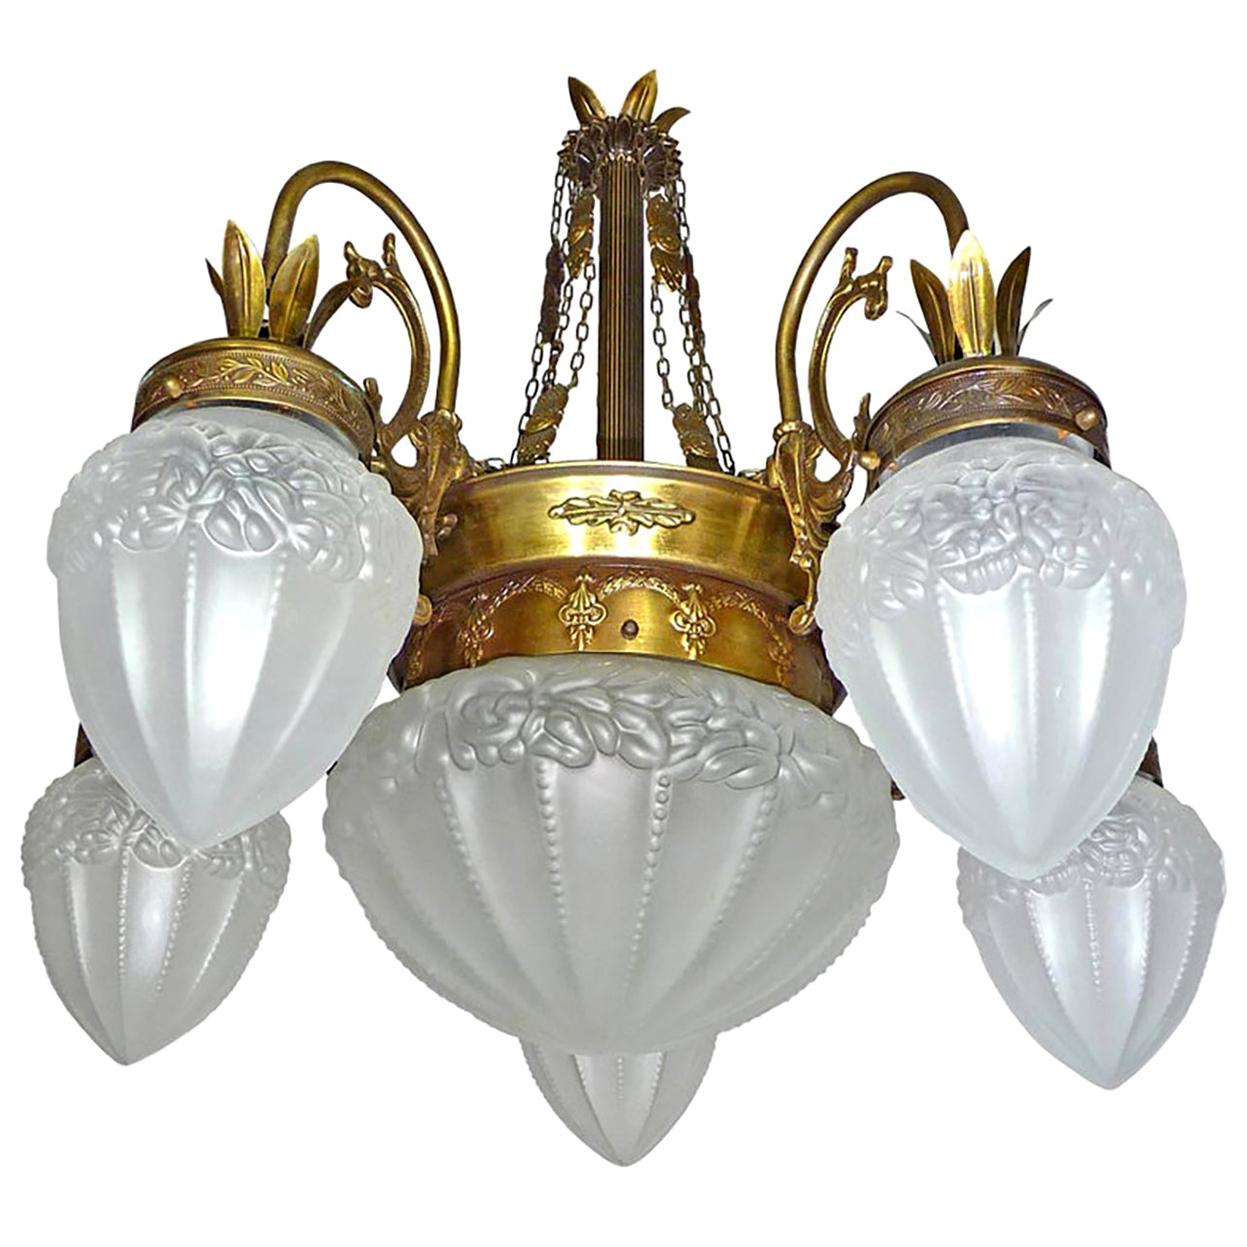 Art Deco Art Nouveau Gold and Bronze Color, Glass Degué Style Chandelier